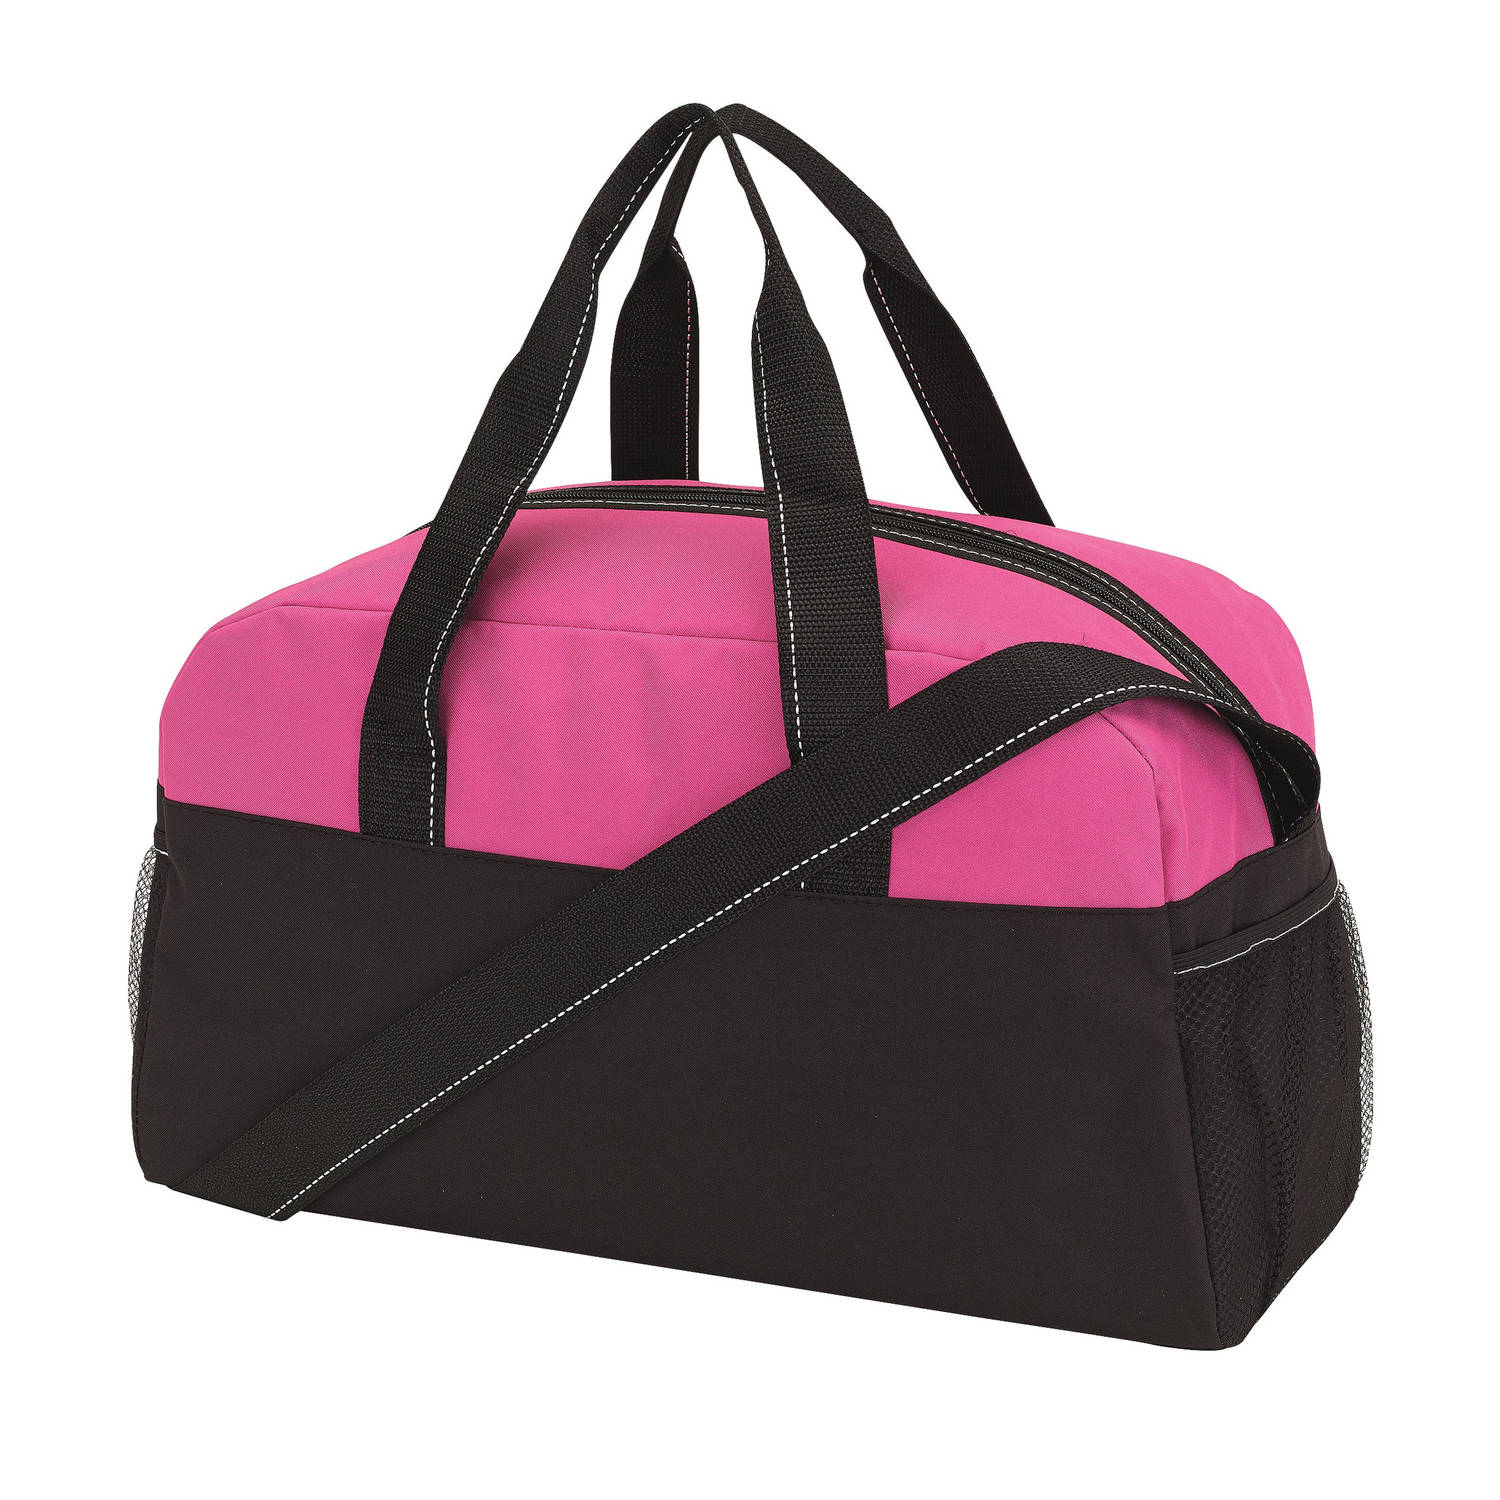 Sporttas model Fitness Master - 45 x 19 x 26 cm - roze/zwart - voor kind/volwassenen